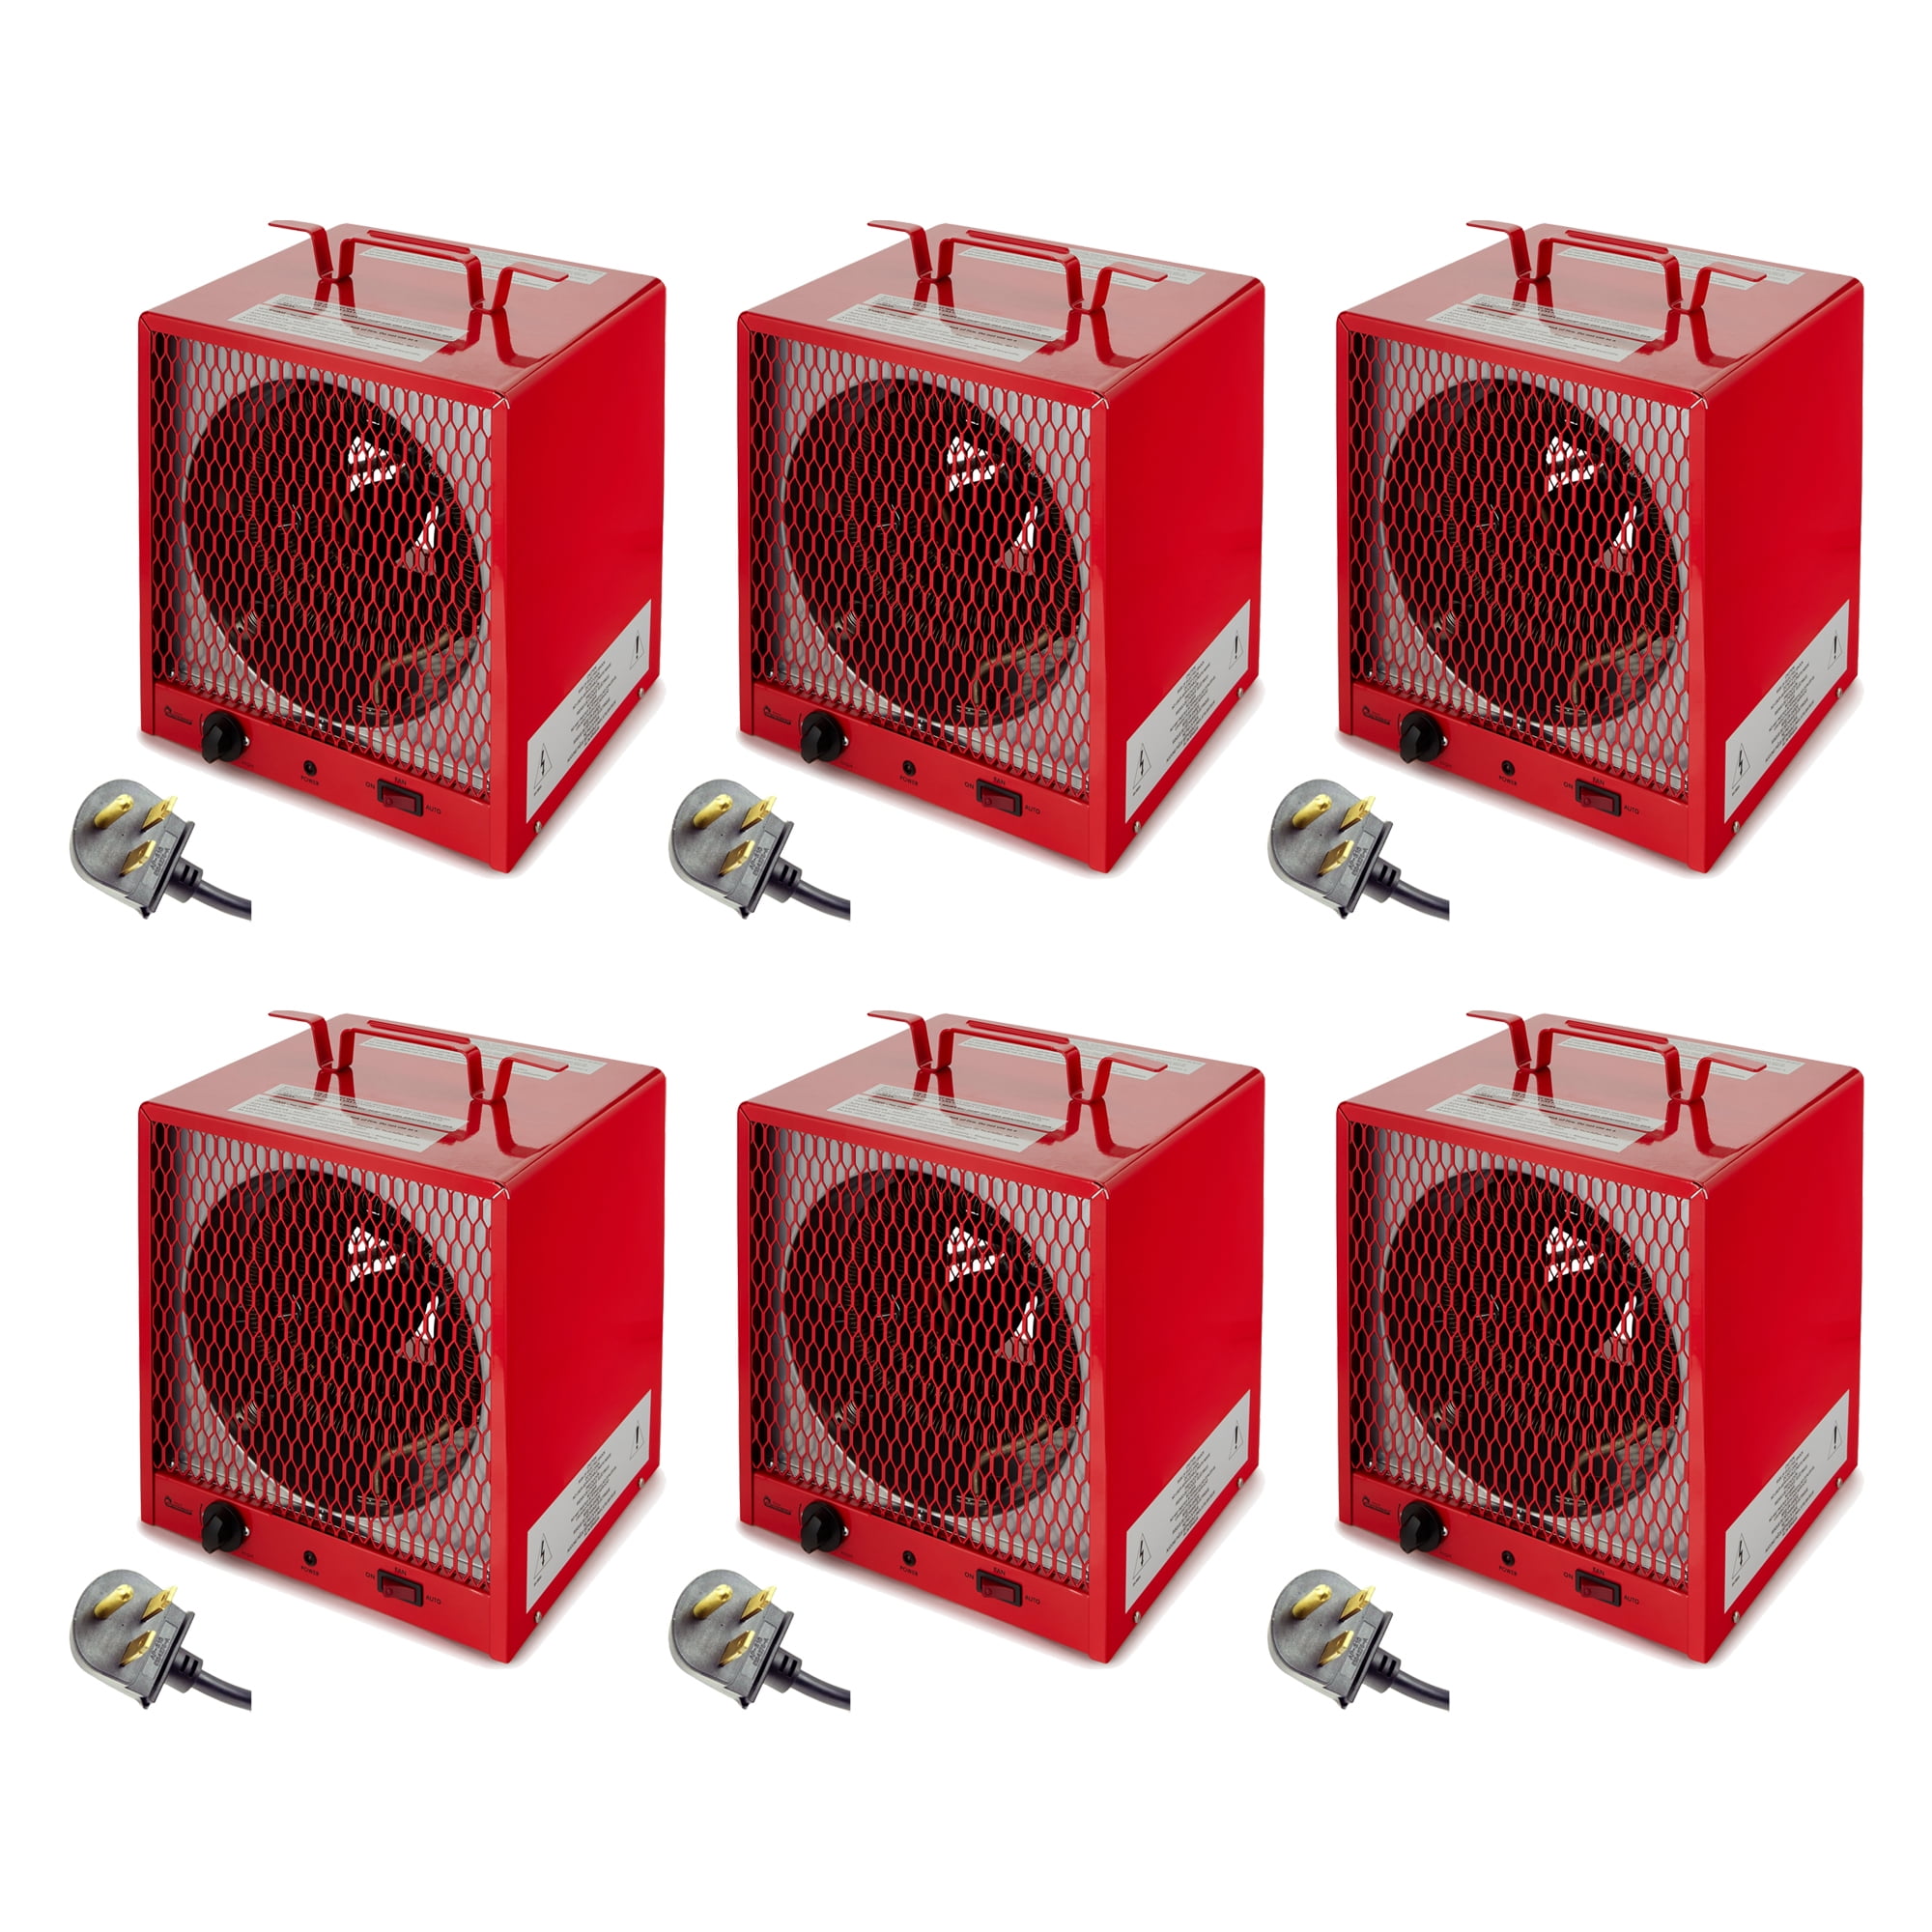 Infrared Heater 240 Volt 5600 Watt Garage Workshop Portable Space Heater Details about   Dr 